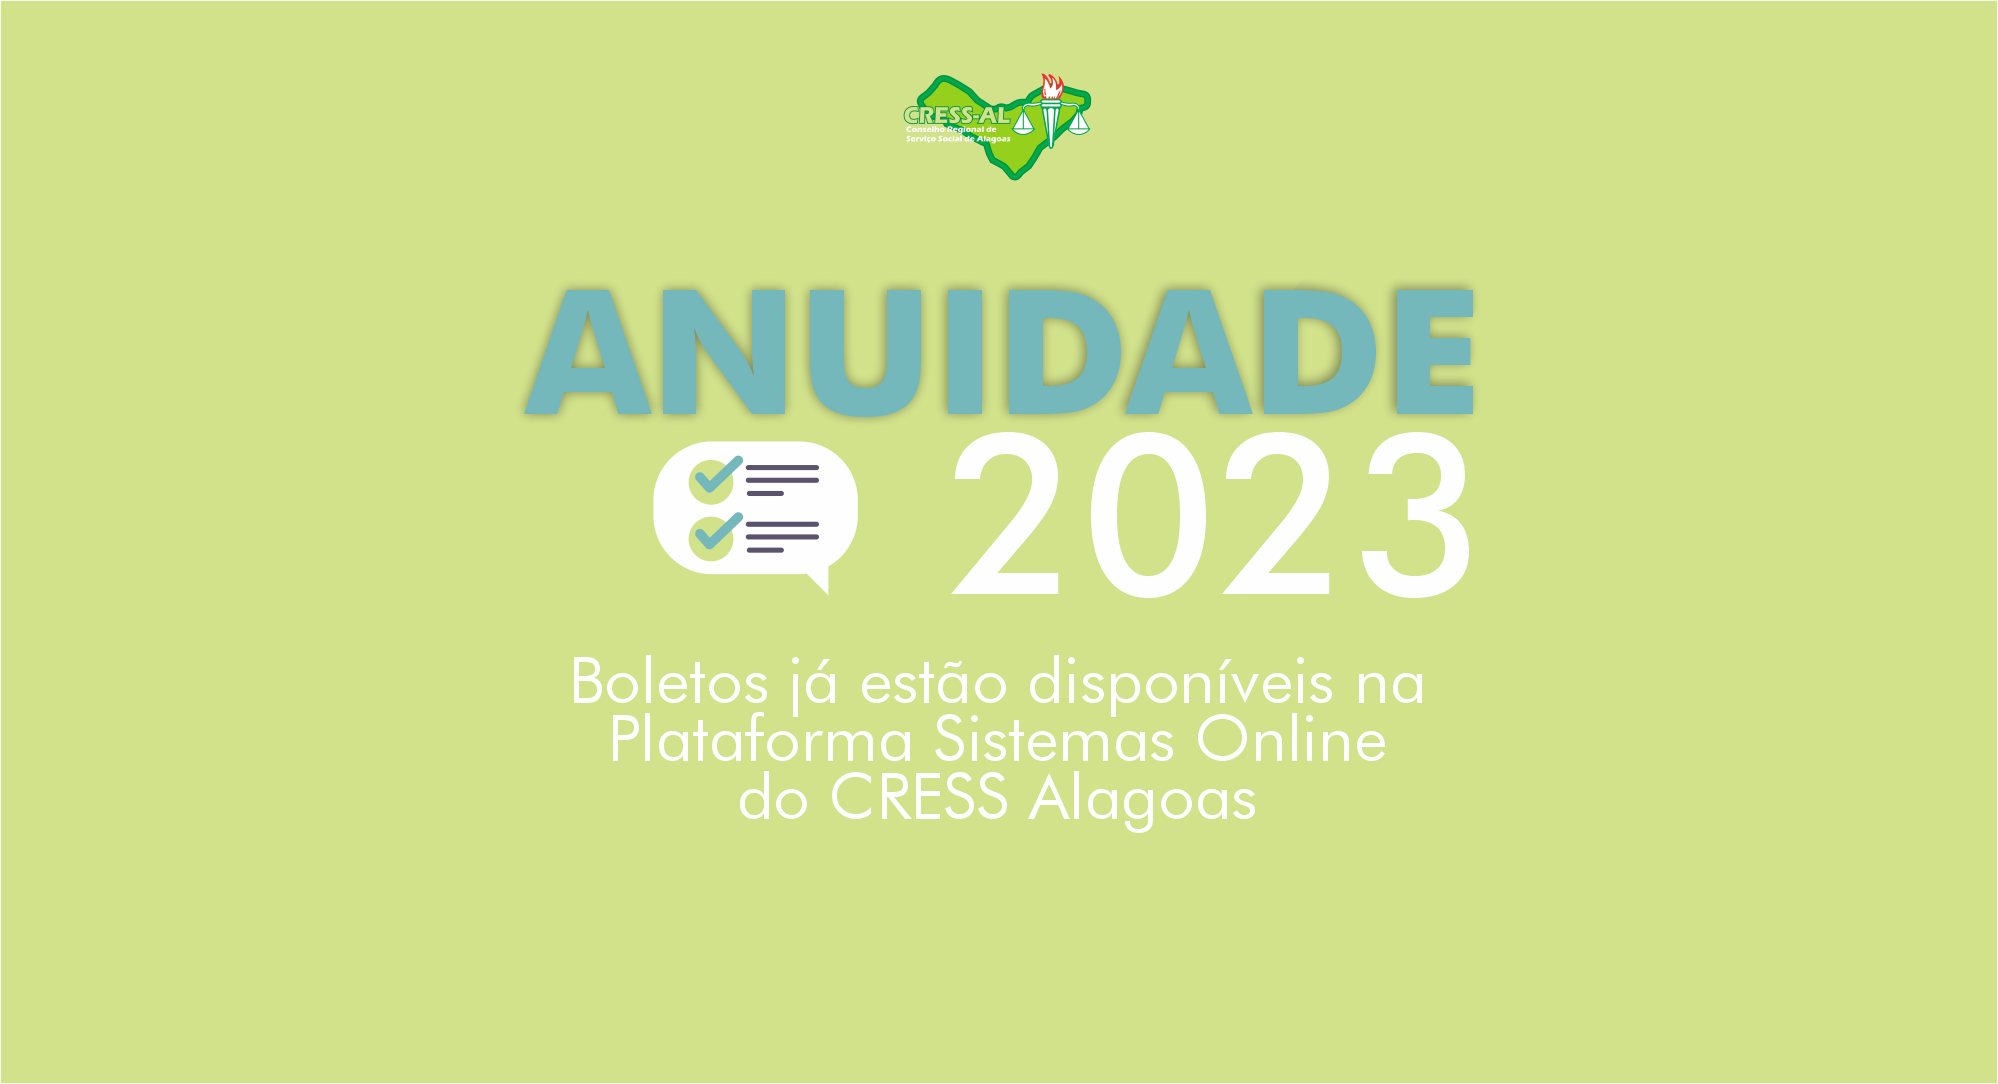 Anuidade 2023: boletos já estão disponíveis na Plataforma Sistemas Online do CRESS Alagoas